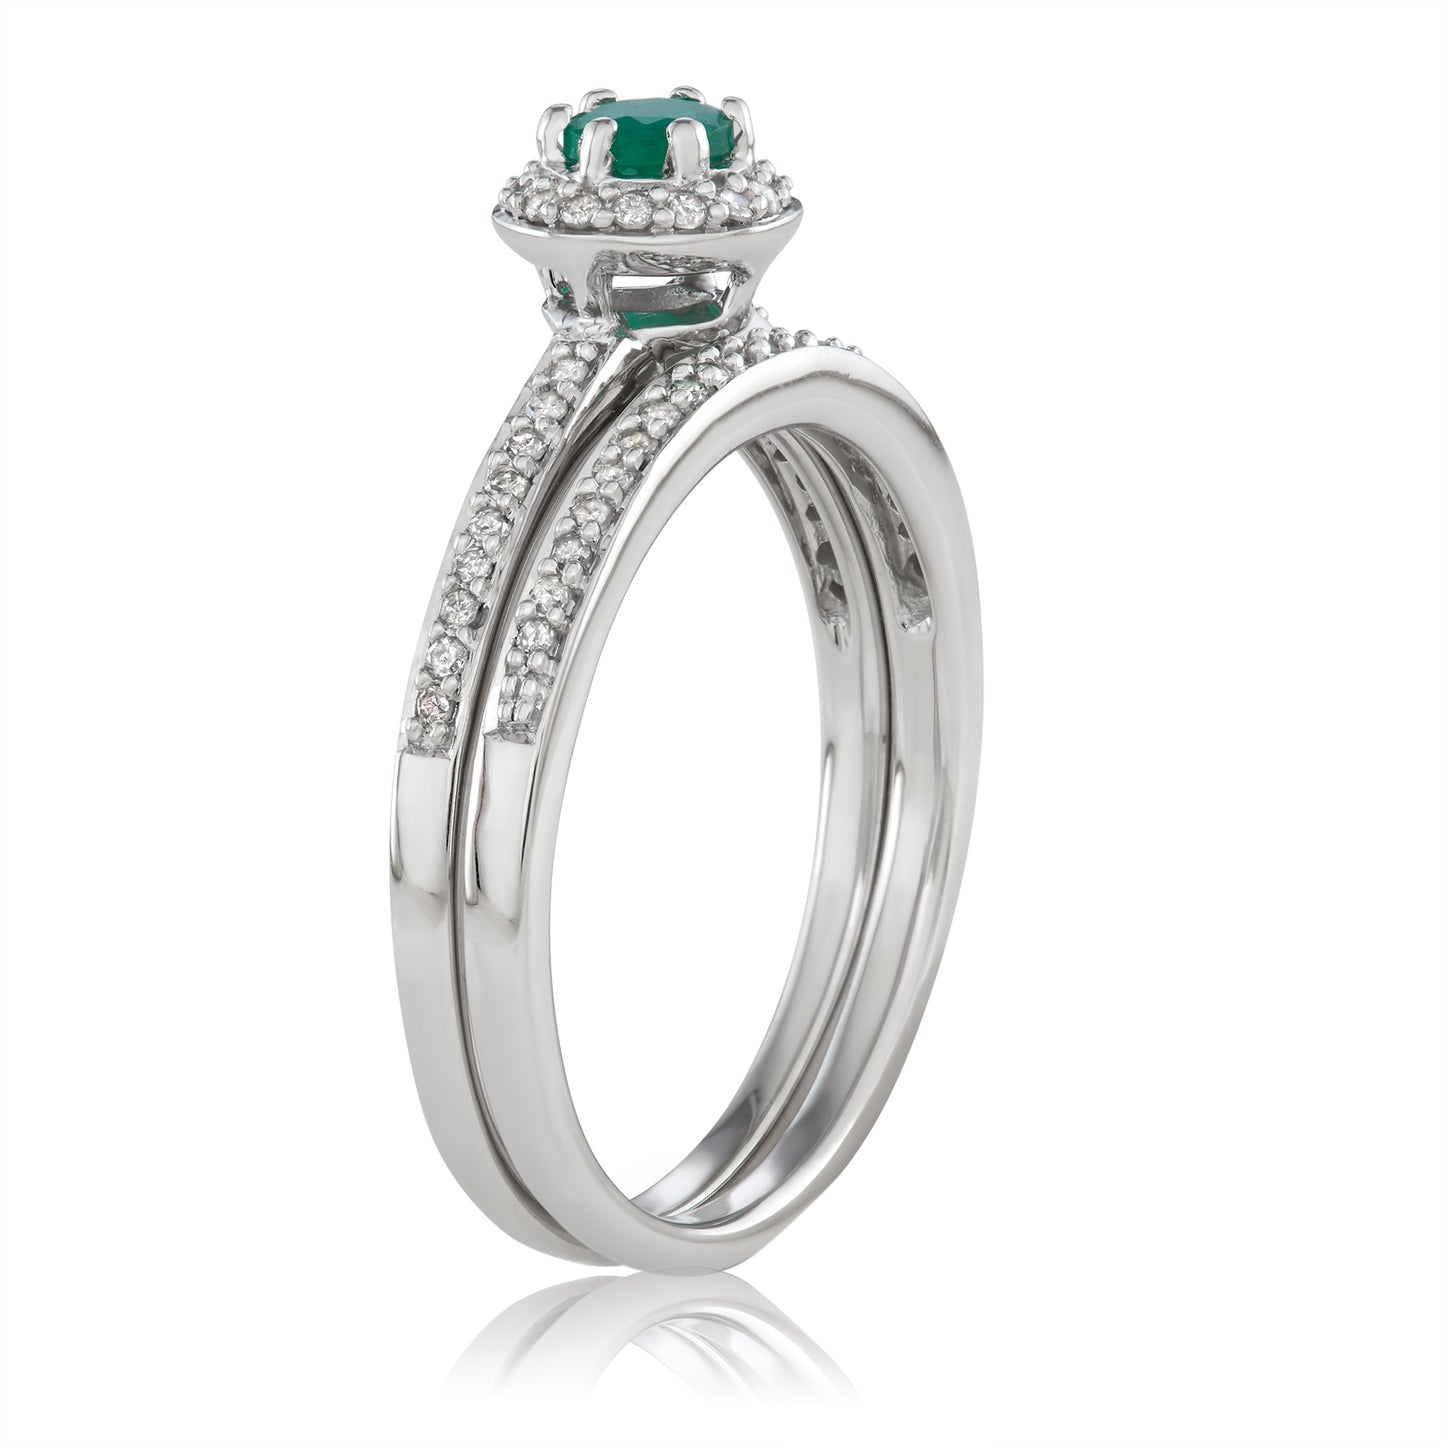 10K White Gold 0.5ct TW Emerald and White Diamond Bridal Set